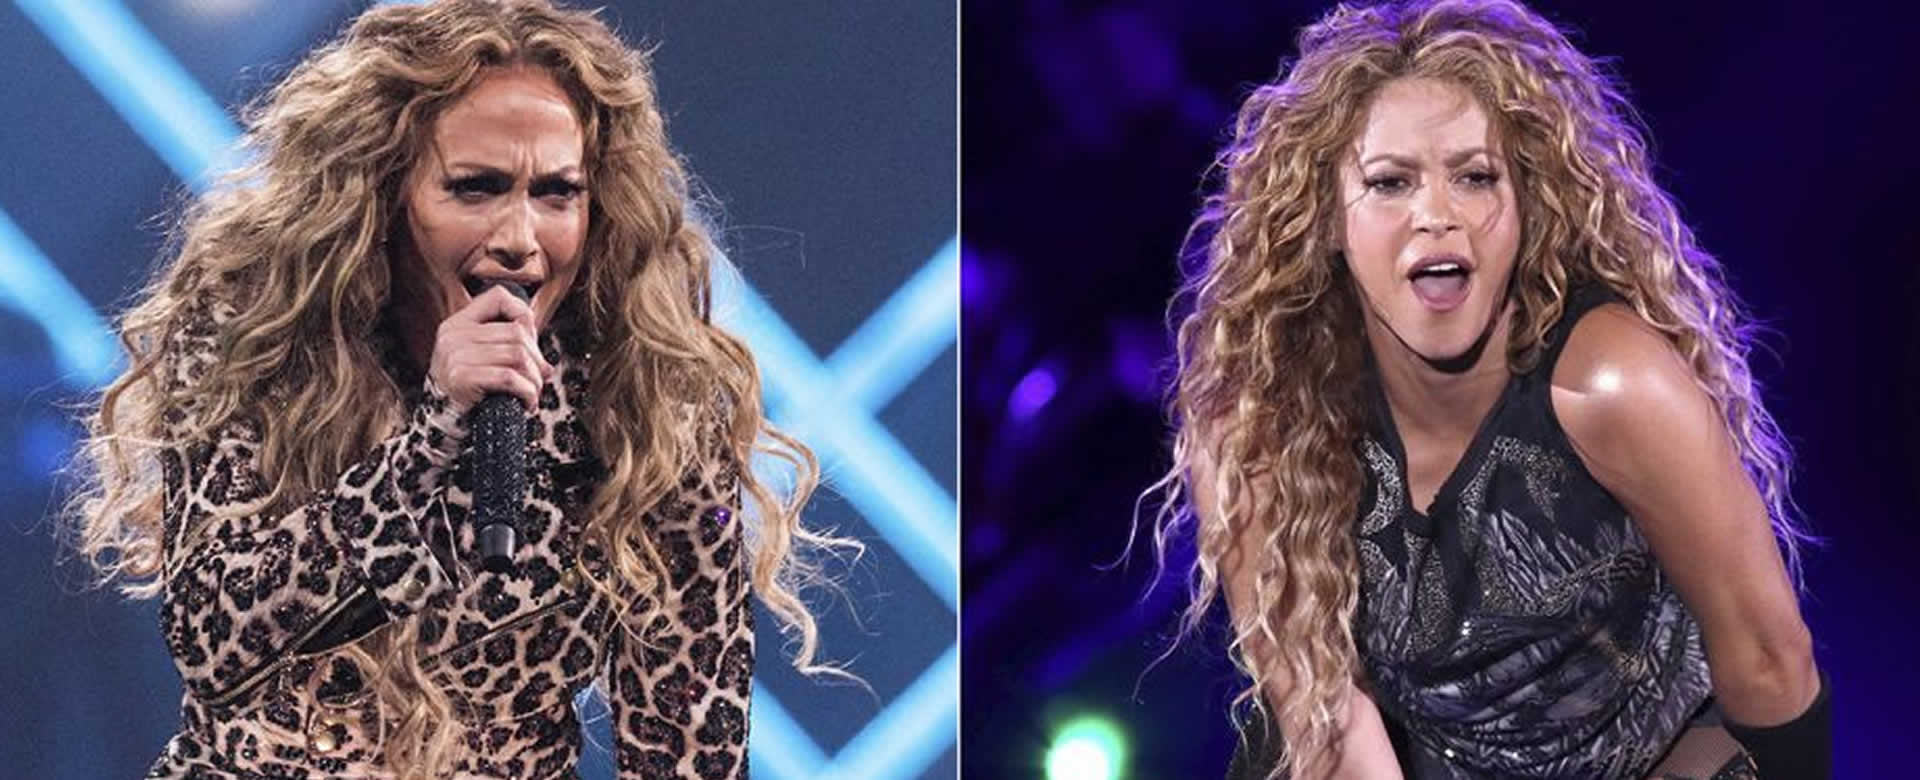 JLo y Shakira protagonizarán el espectáculo del medio tiempo del Super Bowl 2020